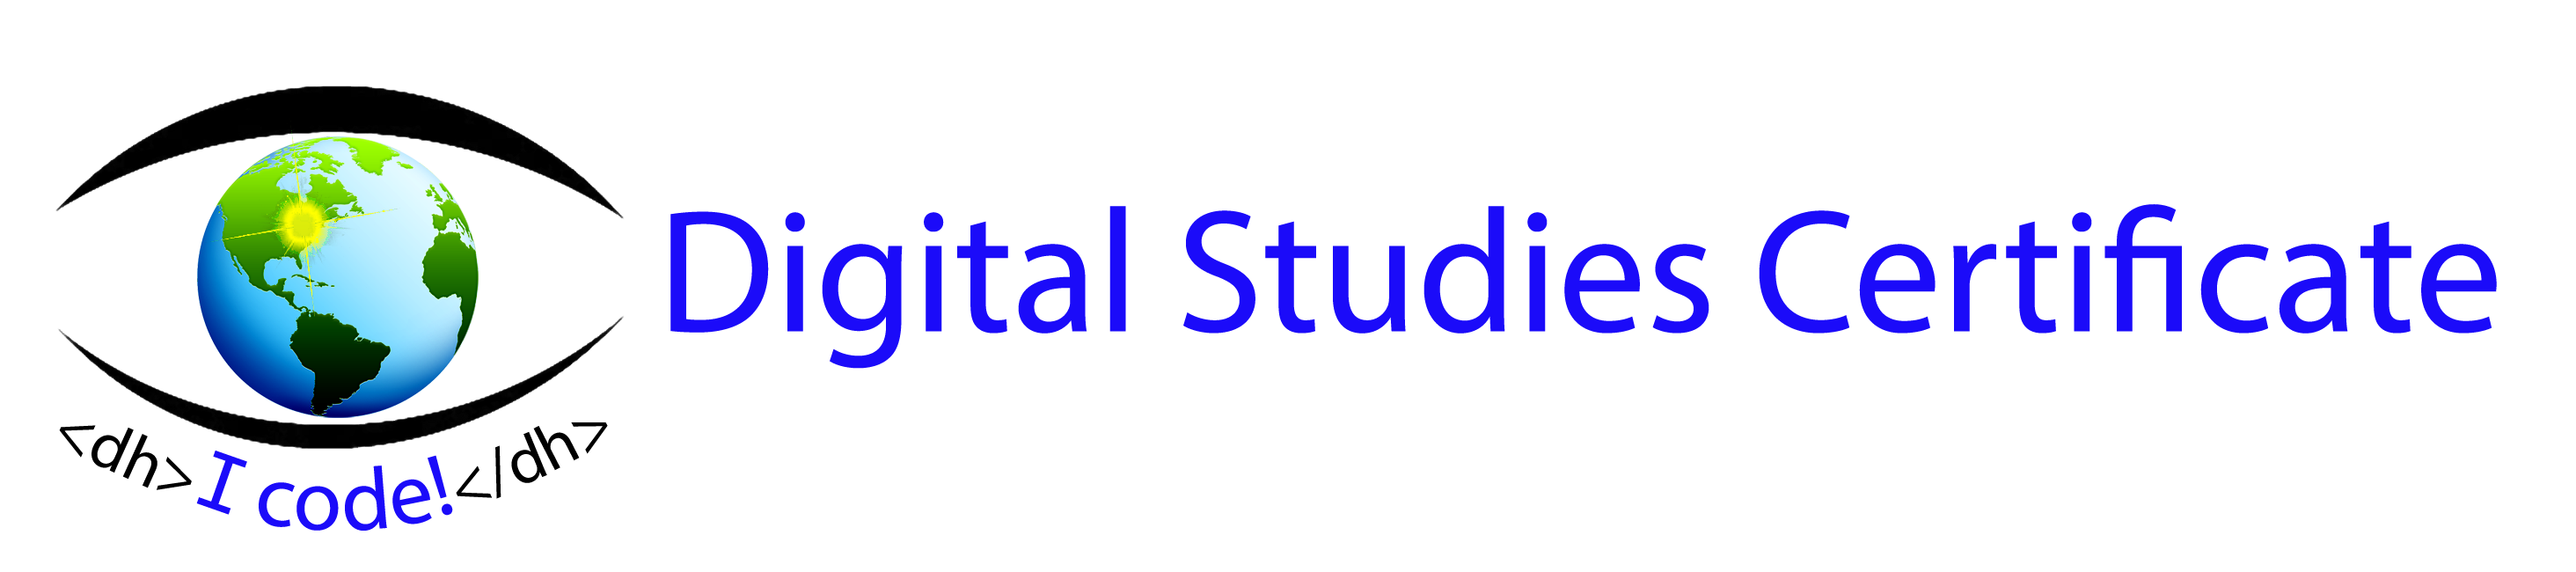 Digital Studies Certificate logo